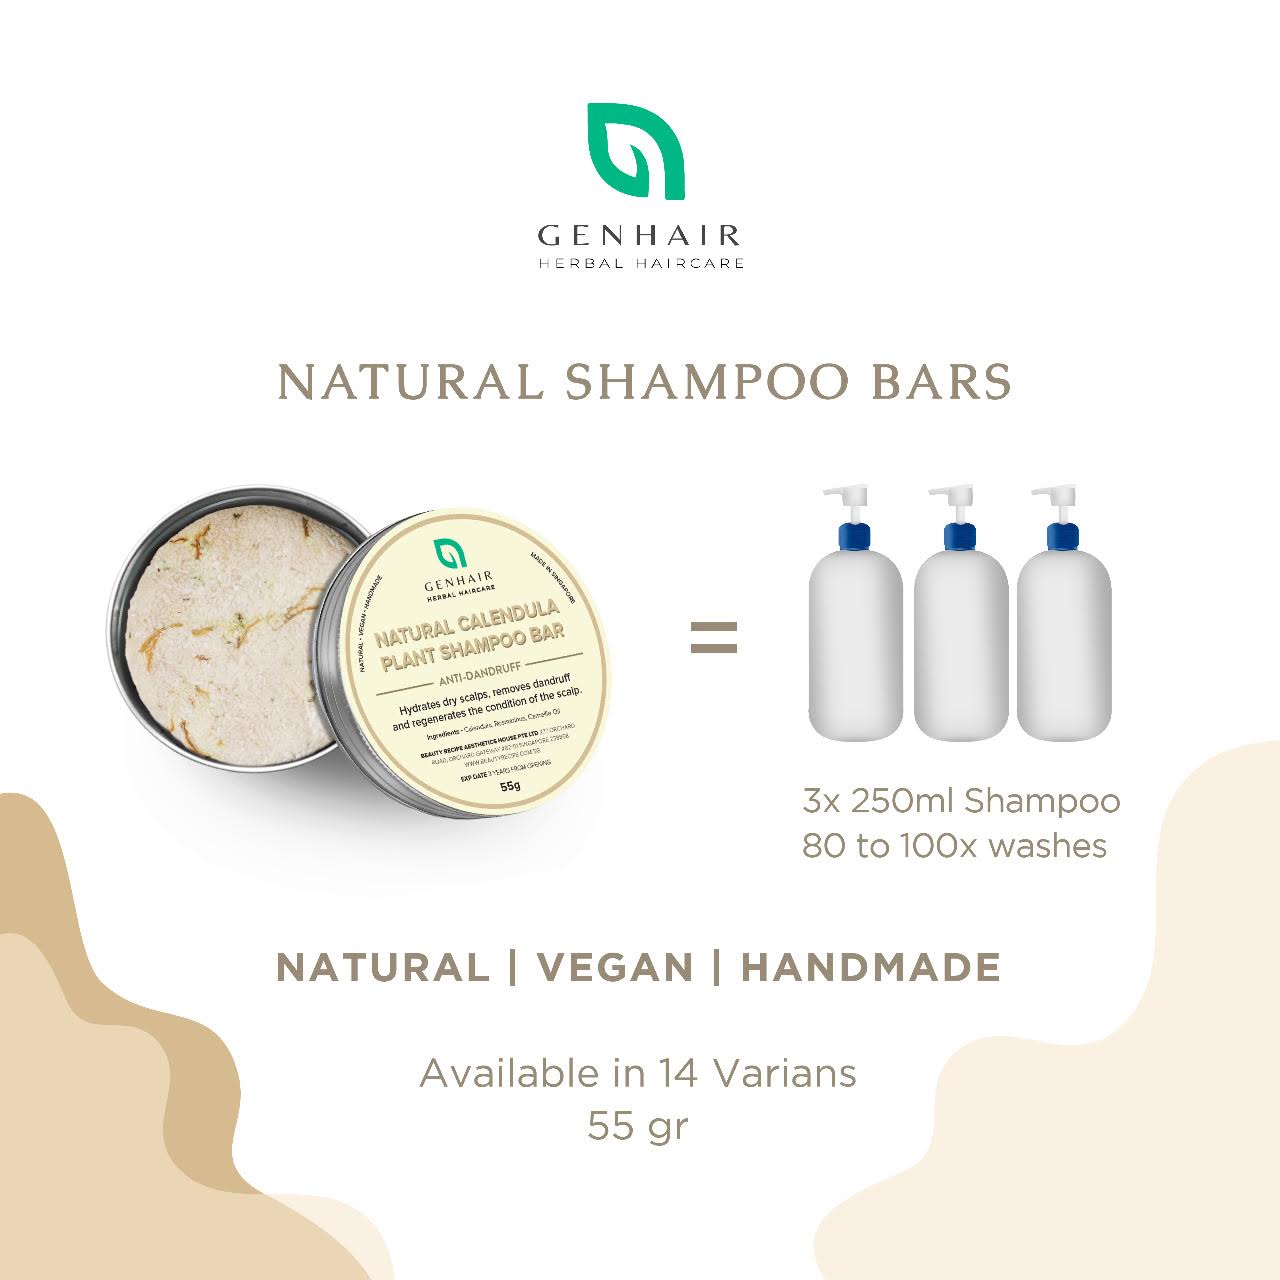 Natural Mint Shampoo Bar - Oil Control